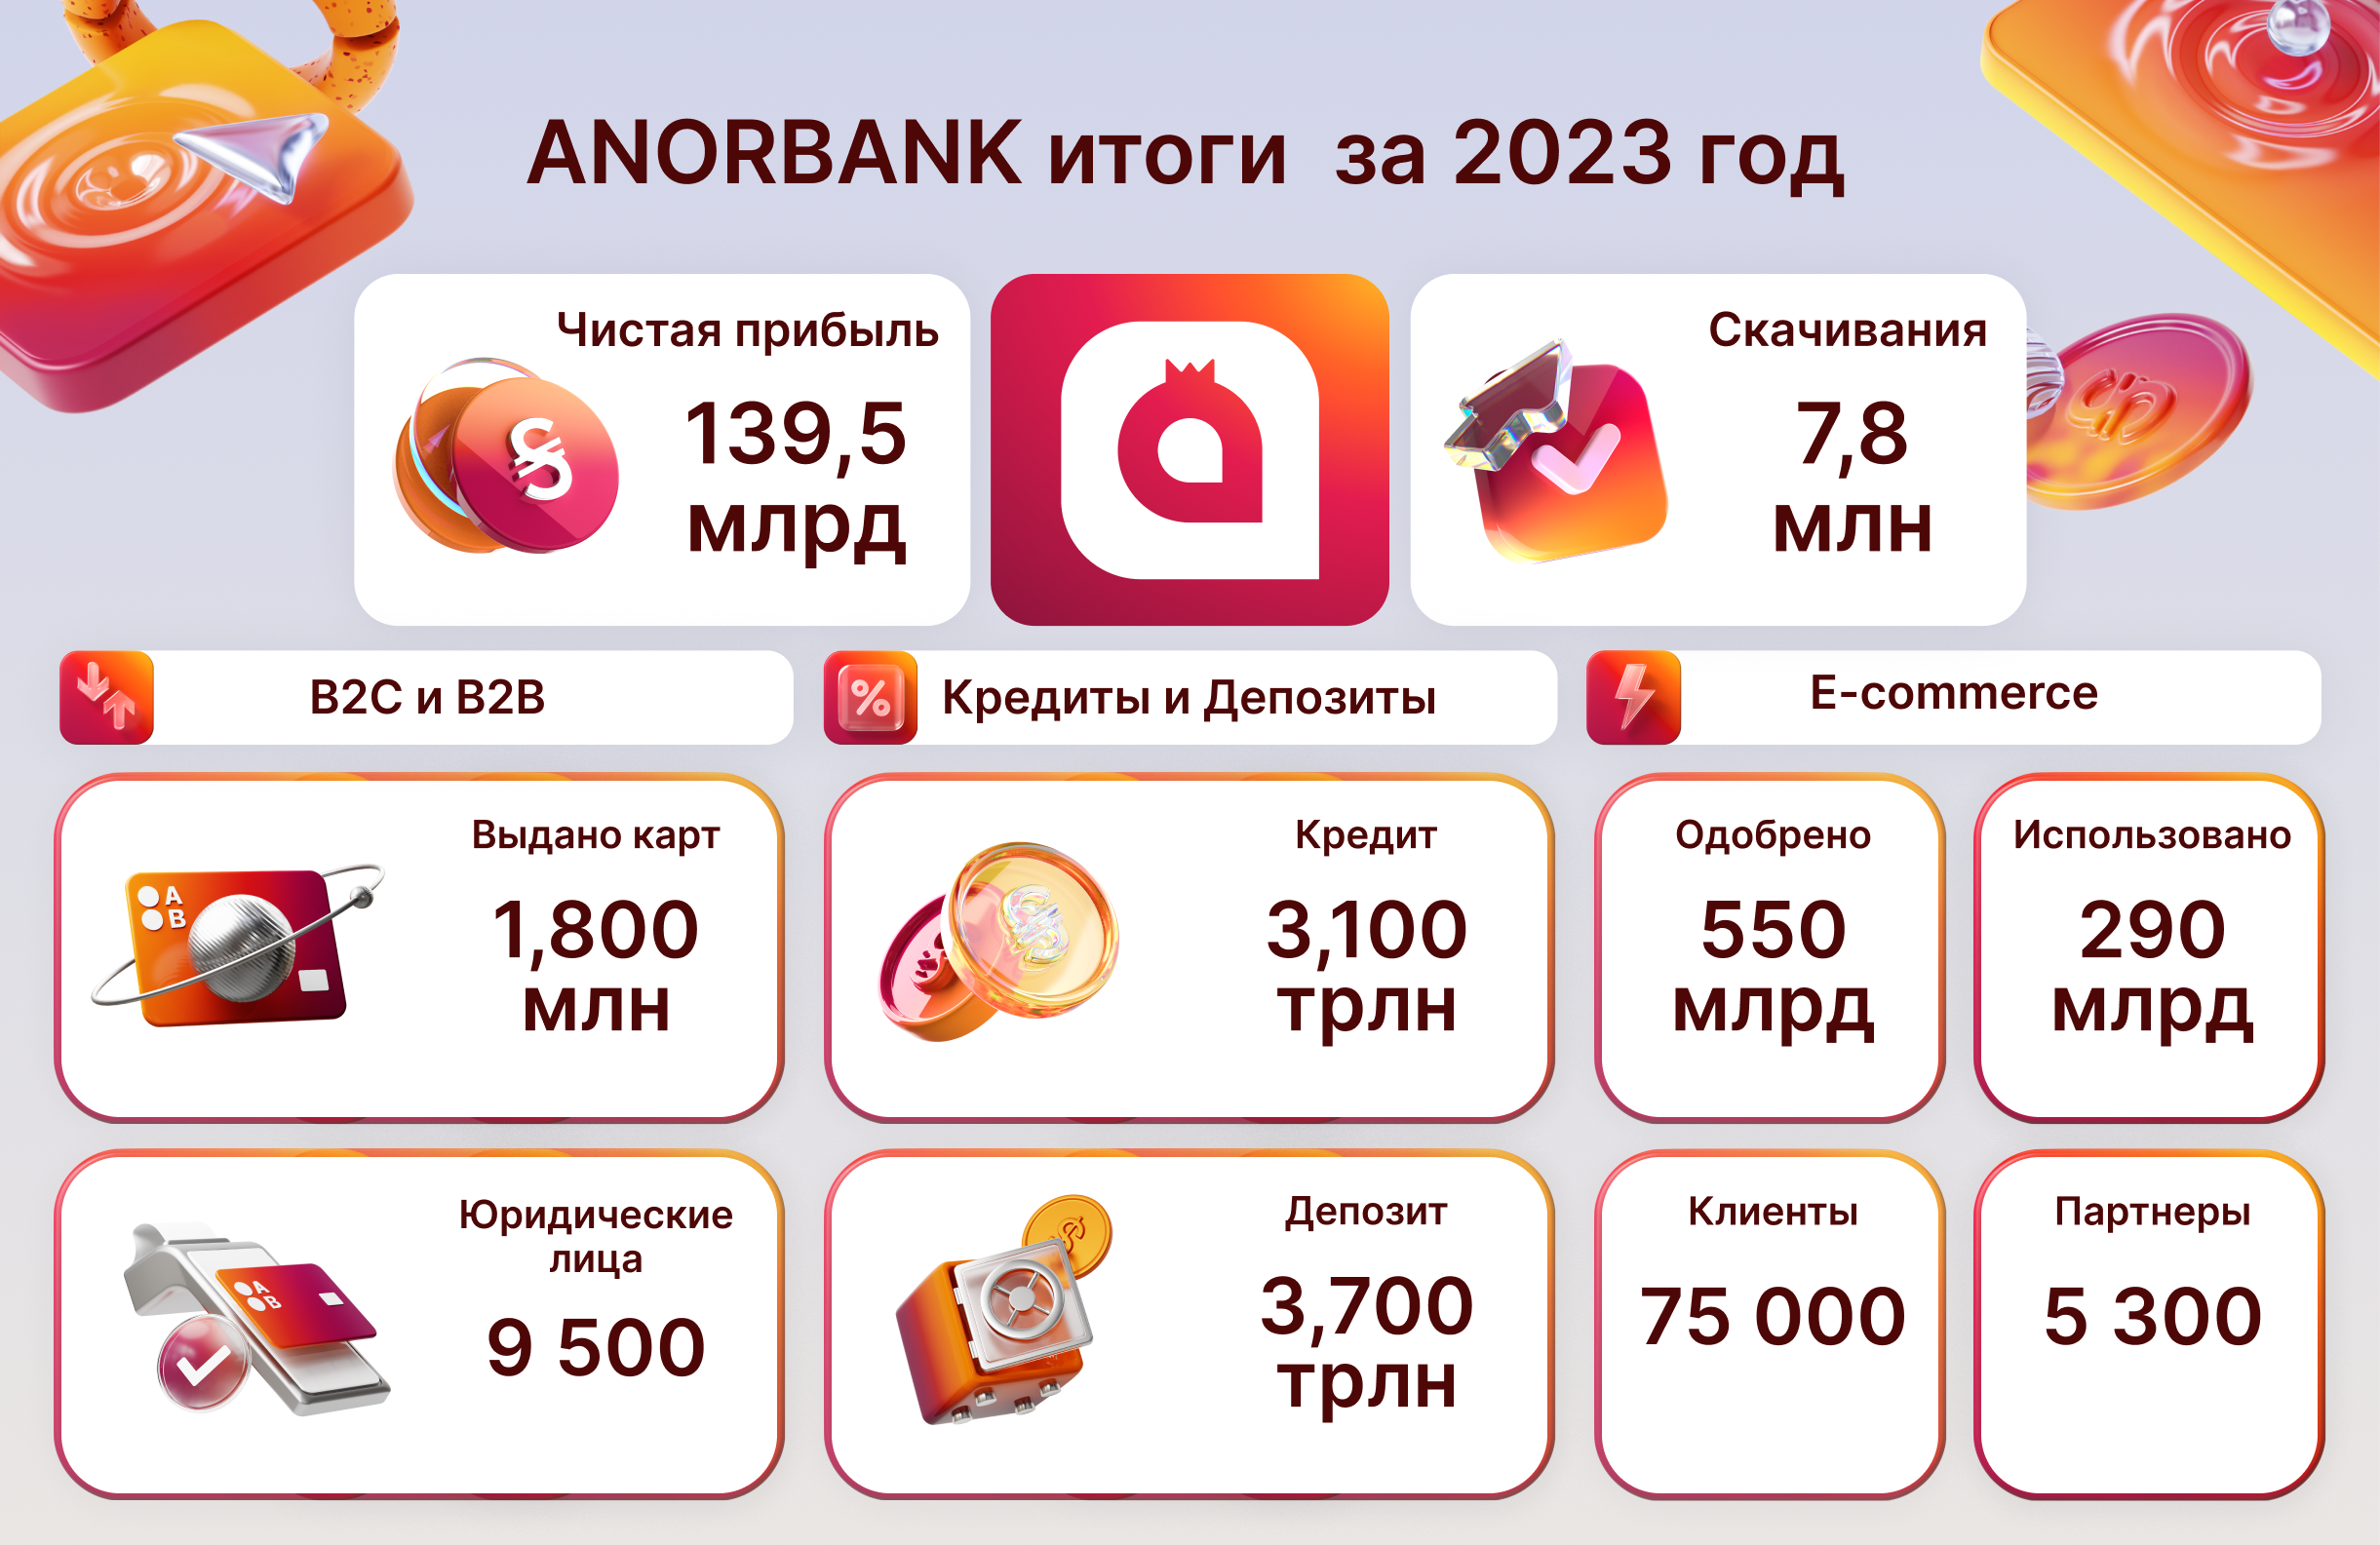 Успех и дальнейший рост: ANOR BANK поделился результатами за 2023 год